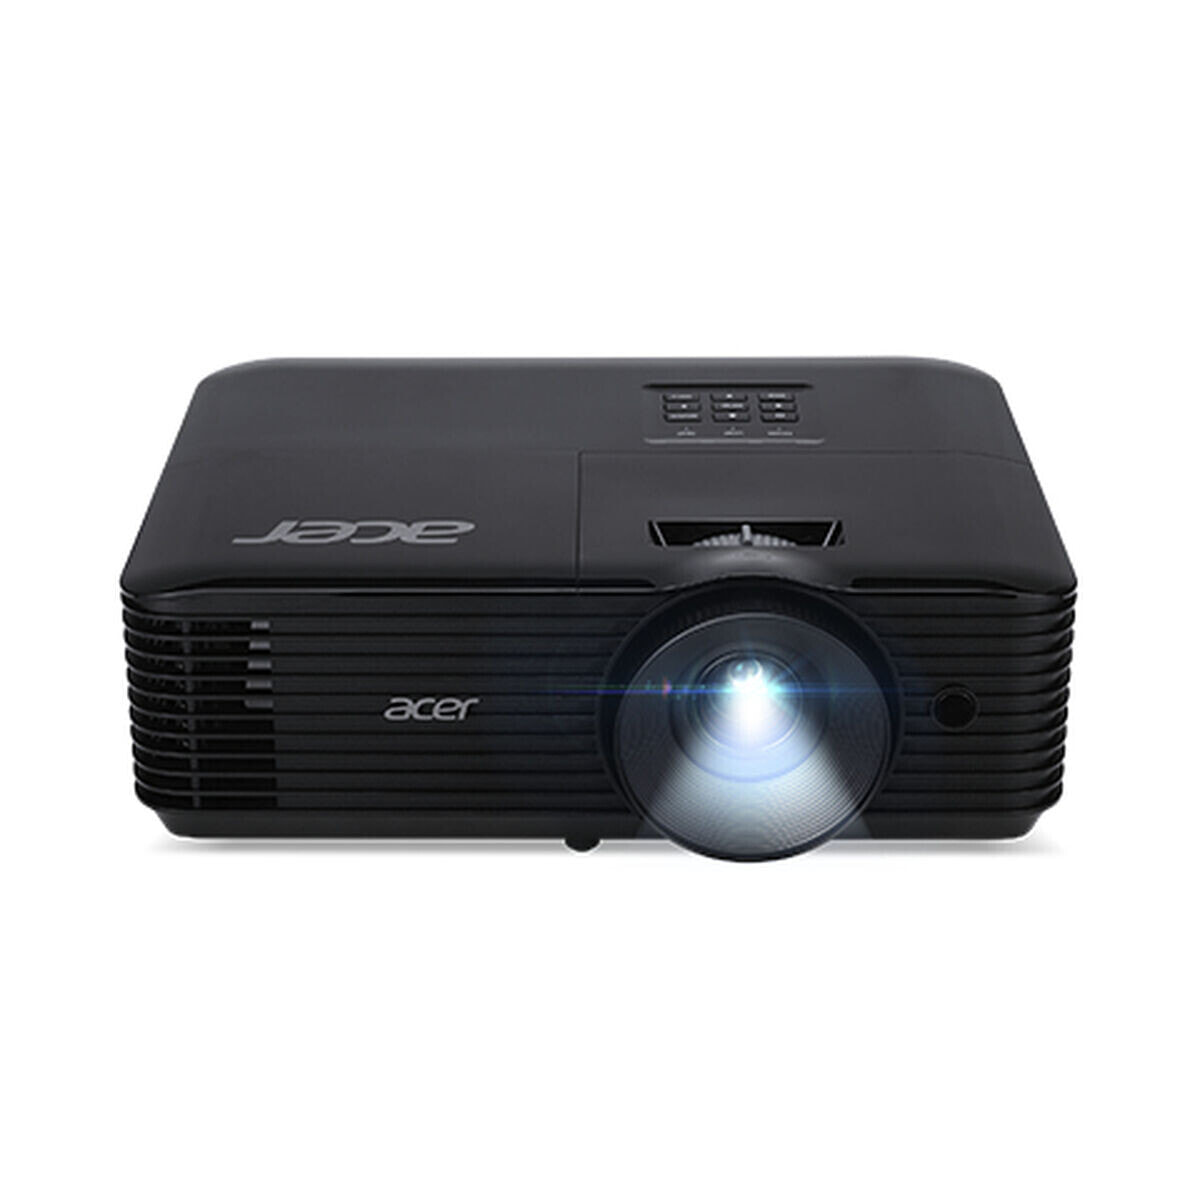 Acer Essential X1128i мультимедиа-проектор 4500 лм DLP SVGA (800x600) Черный MR.JTU11.001